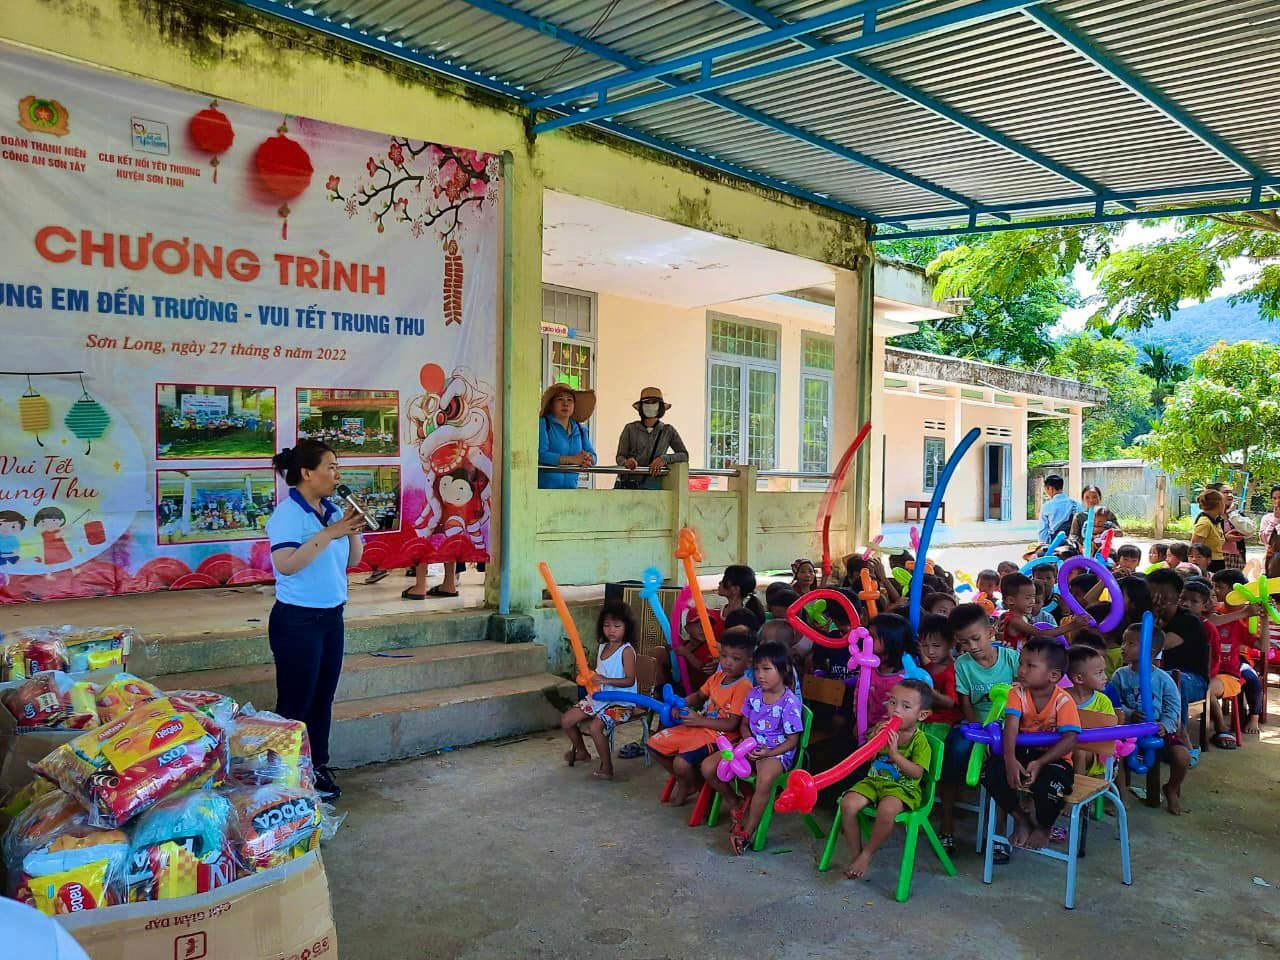 Tổ chức Chương trình “Cùng em đến trường - Vui Tết Trung thu” tại thôn Tà Vay, xã Sơn Long, huyện Sơn Tây